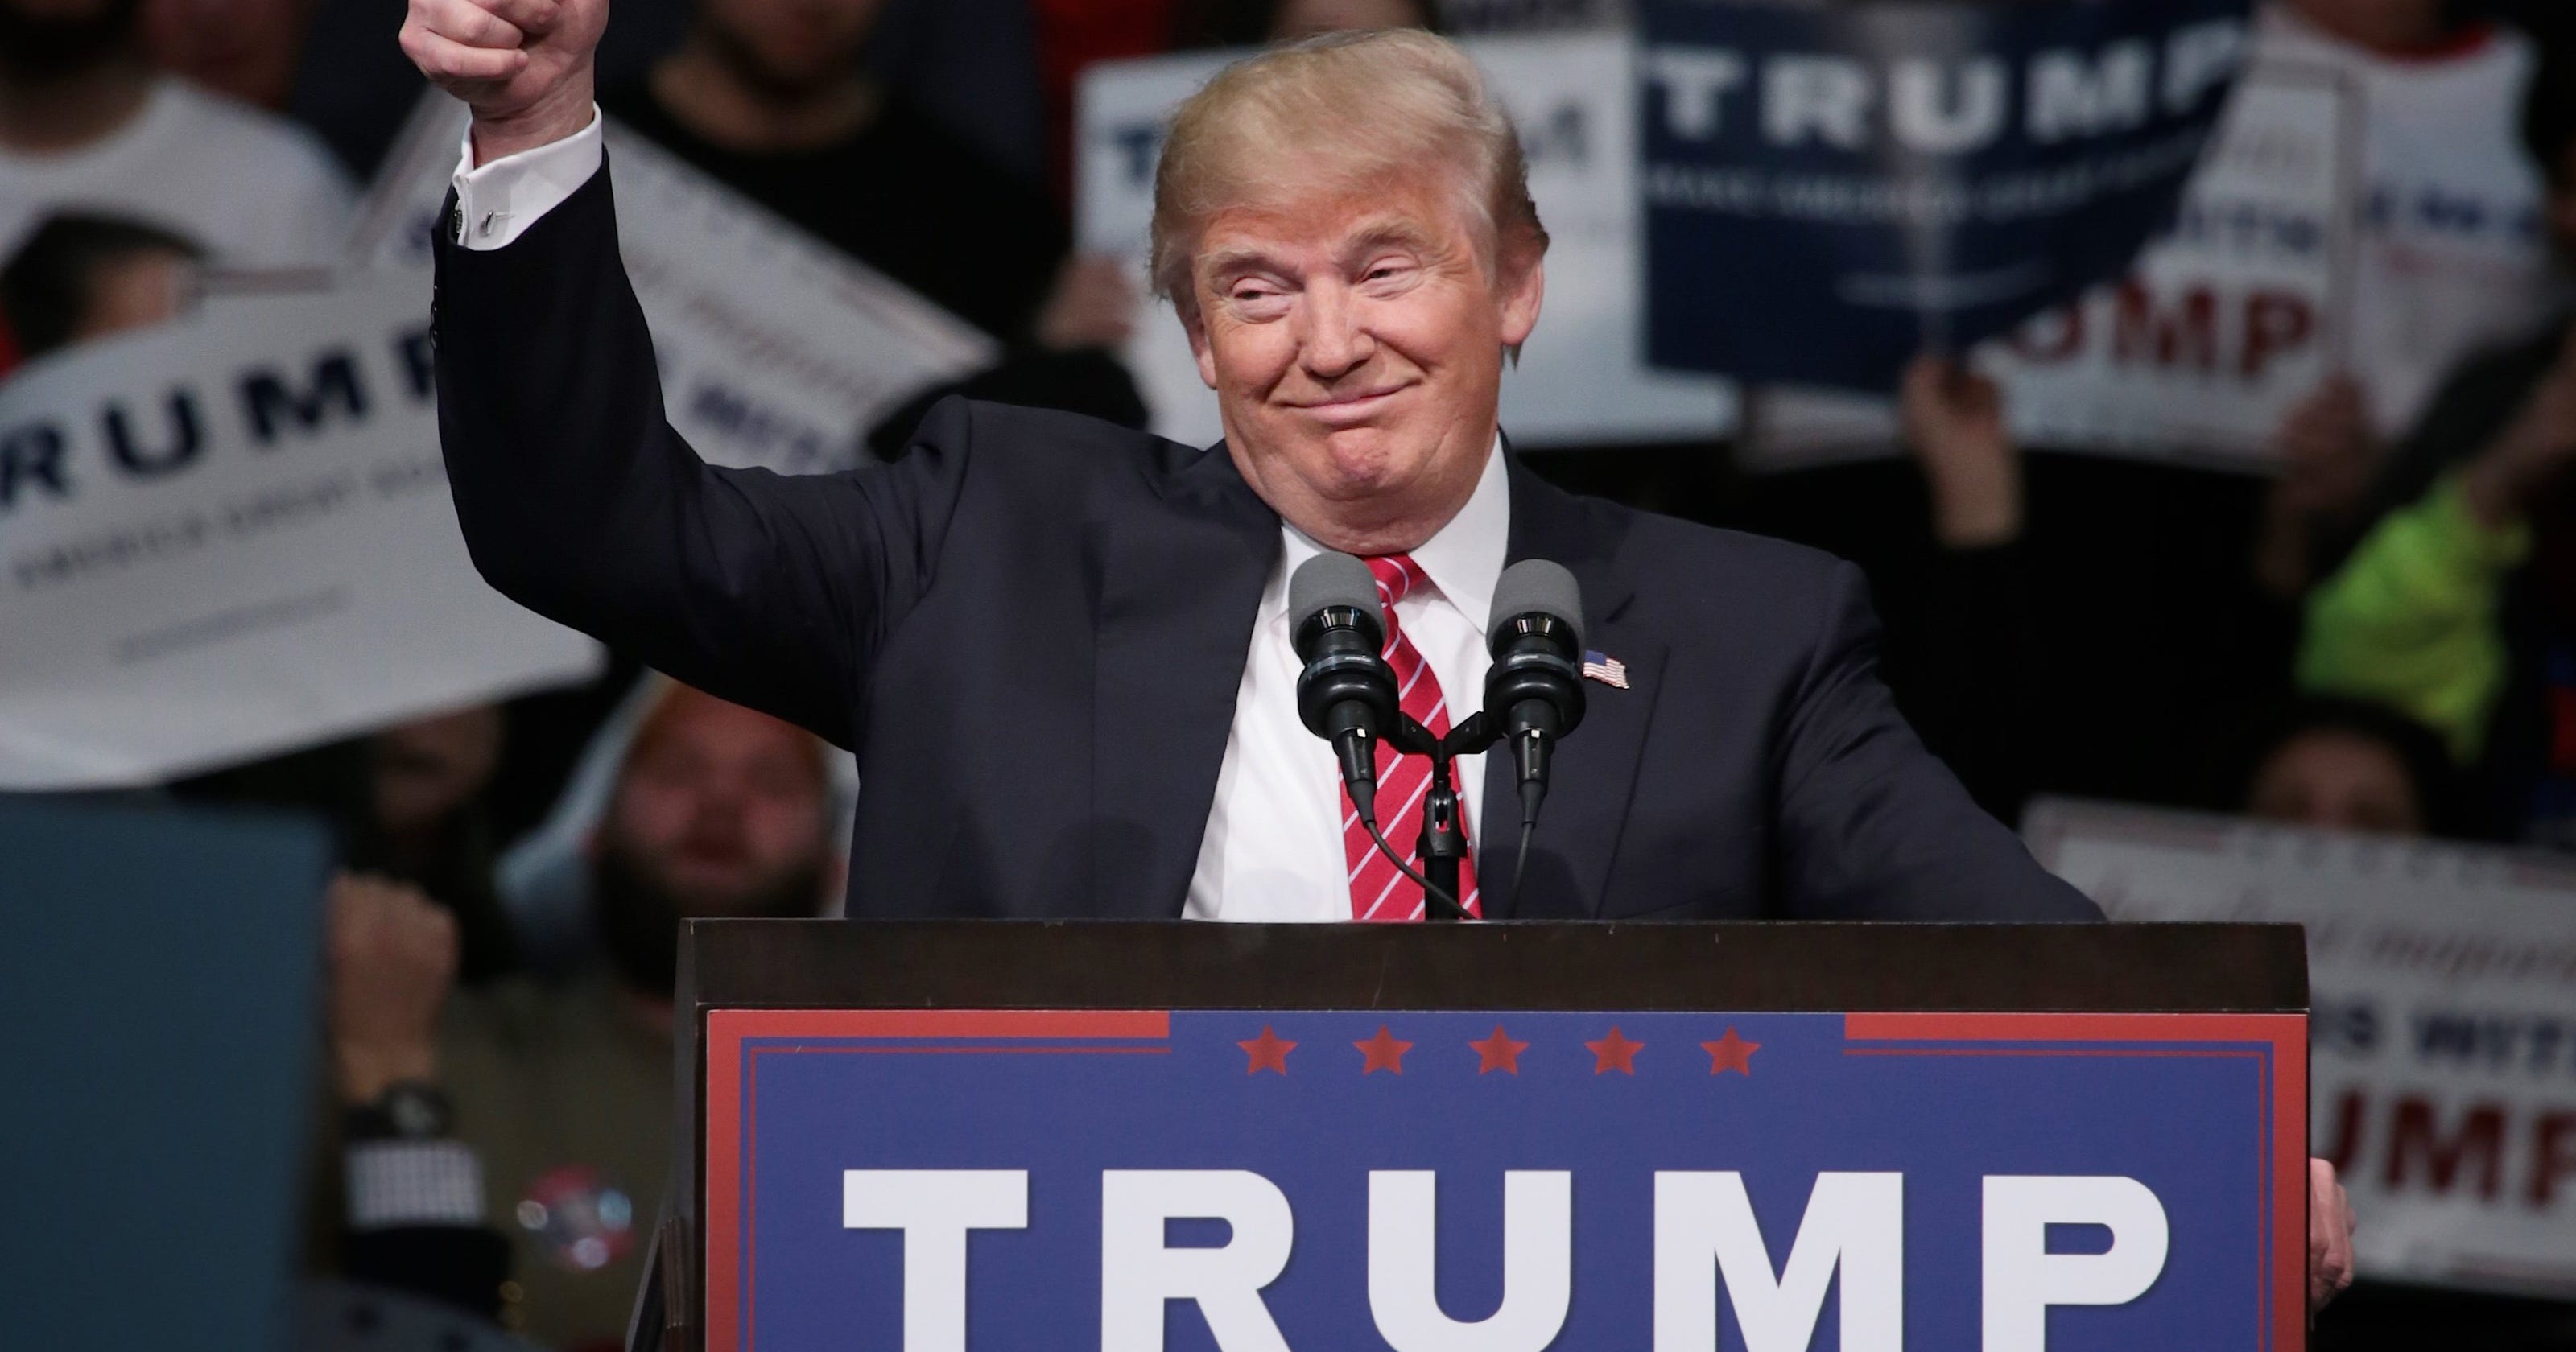 Donald Trump wins Michigan Republican primary